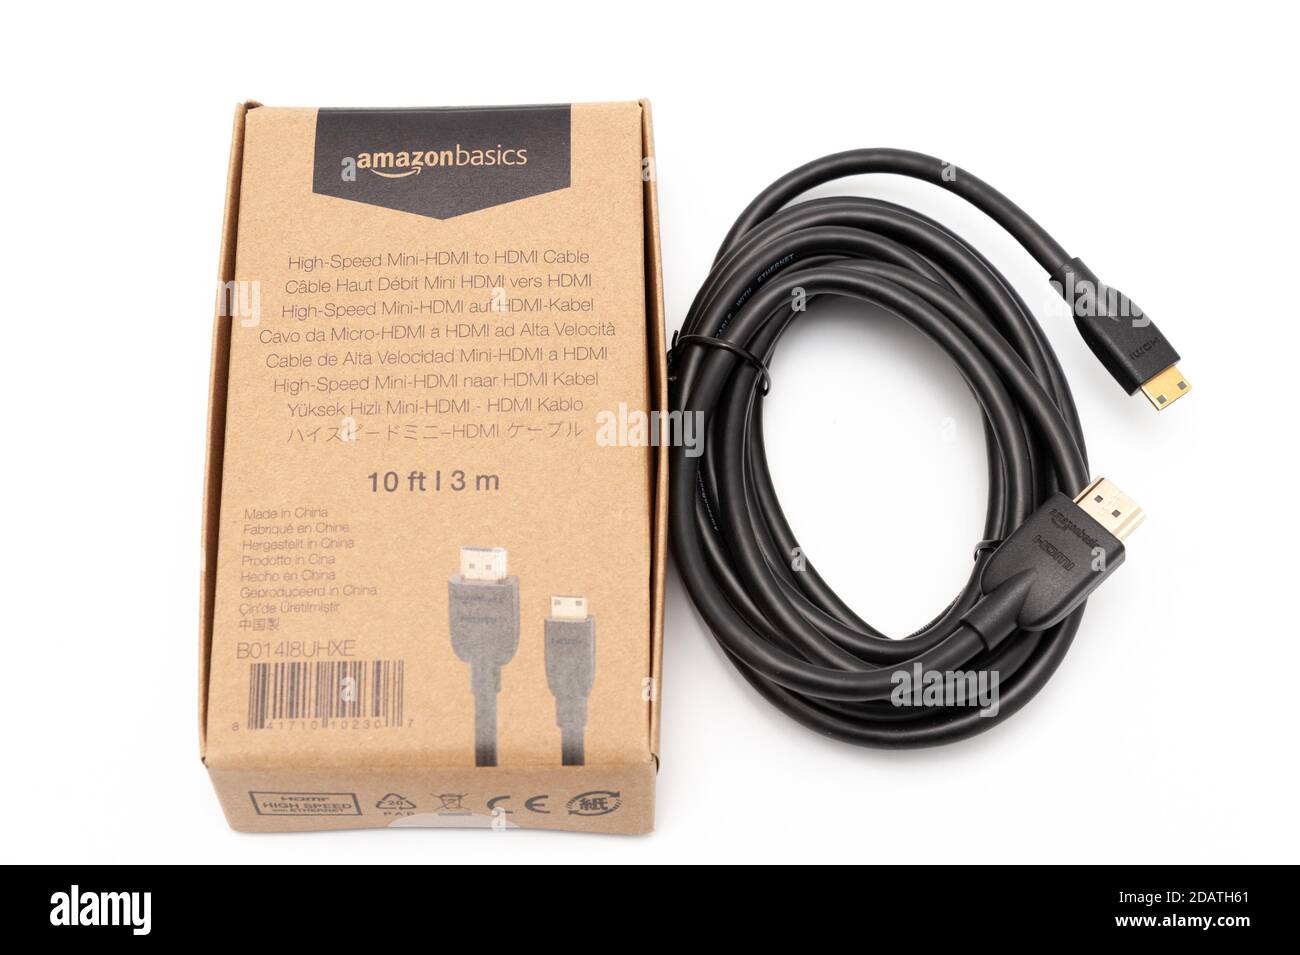 Câble HDMI Amazon Basic 3,0 m (mâle de type A vers mâle de type mini C)  haute vitesse à côté de la petite boîte en carton avec le logo Amazonbasics  Photo Stock -